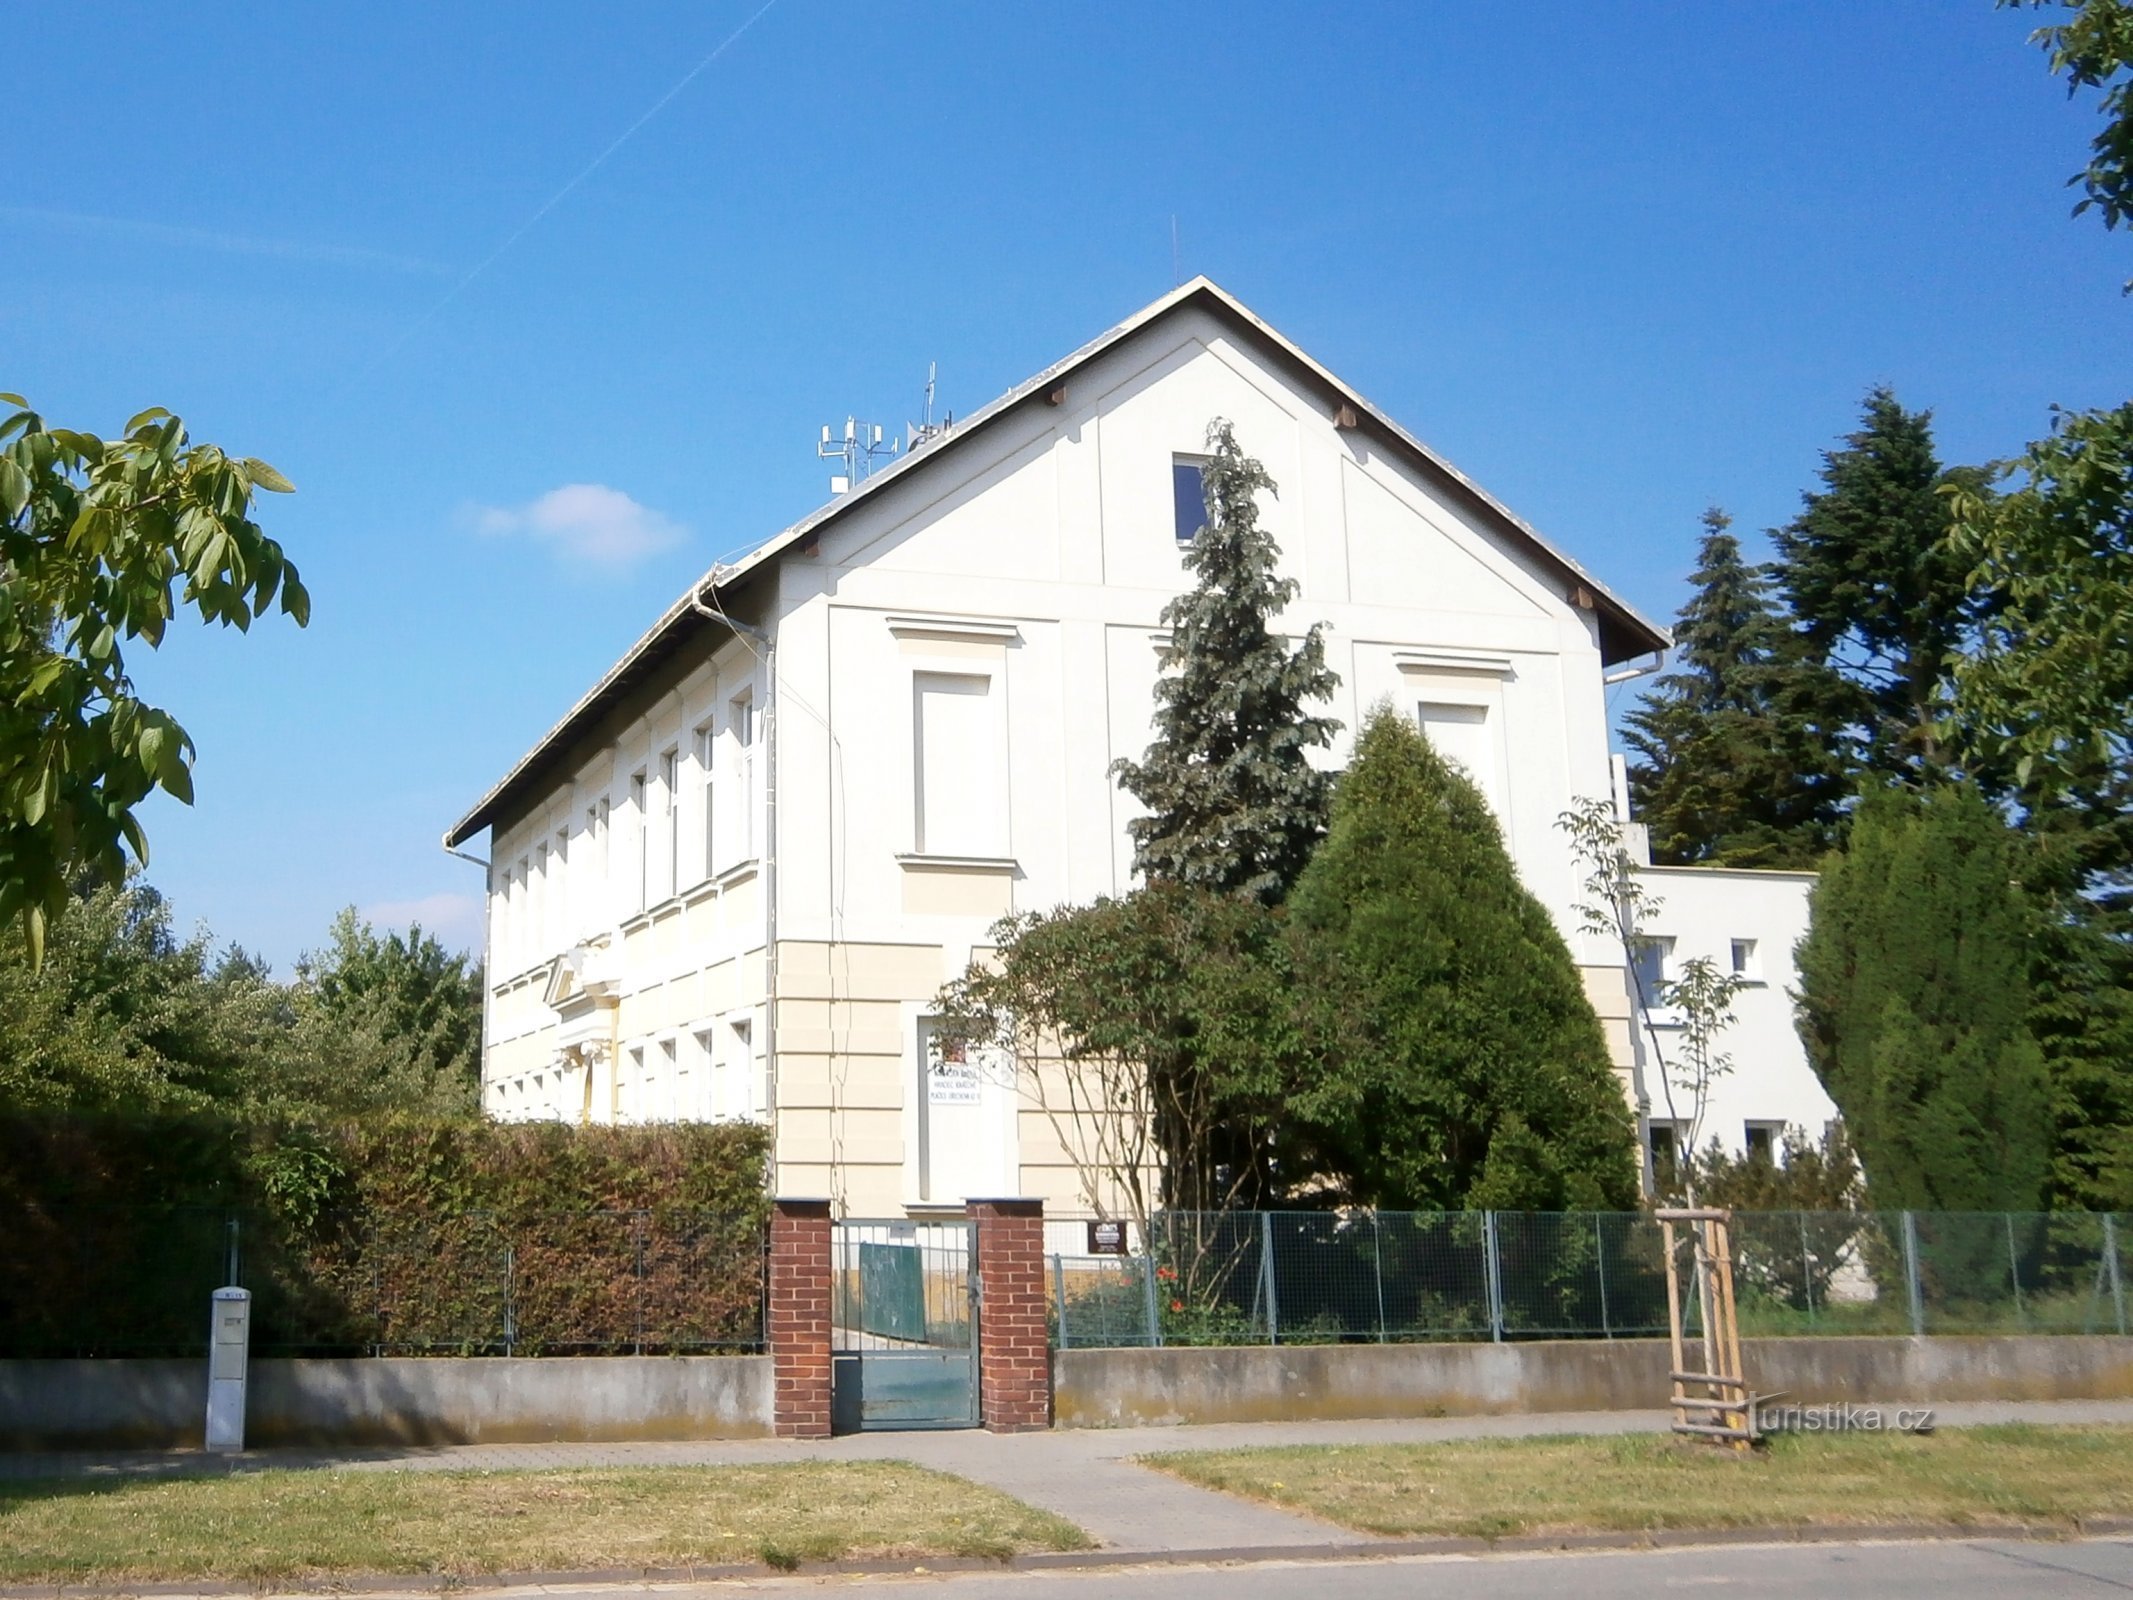 Plačice (Hradec Králové) 的幼儿园